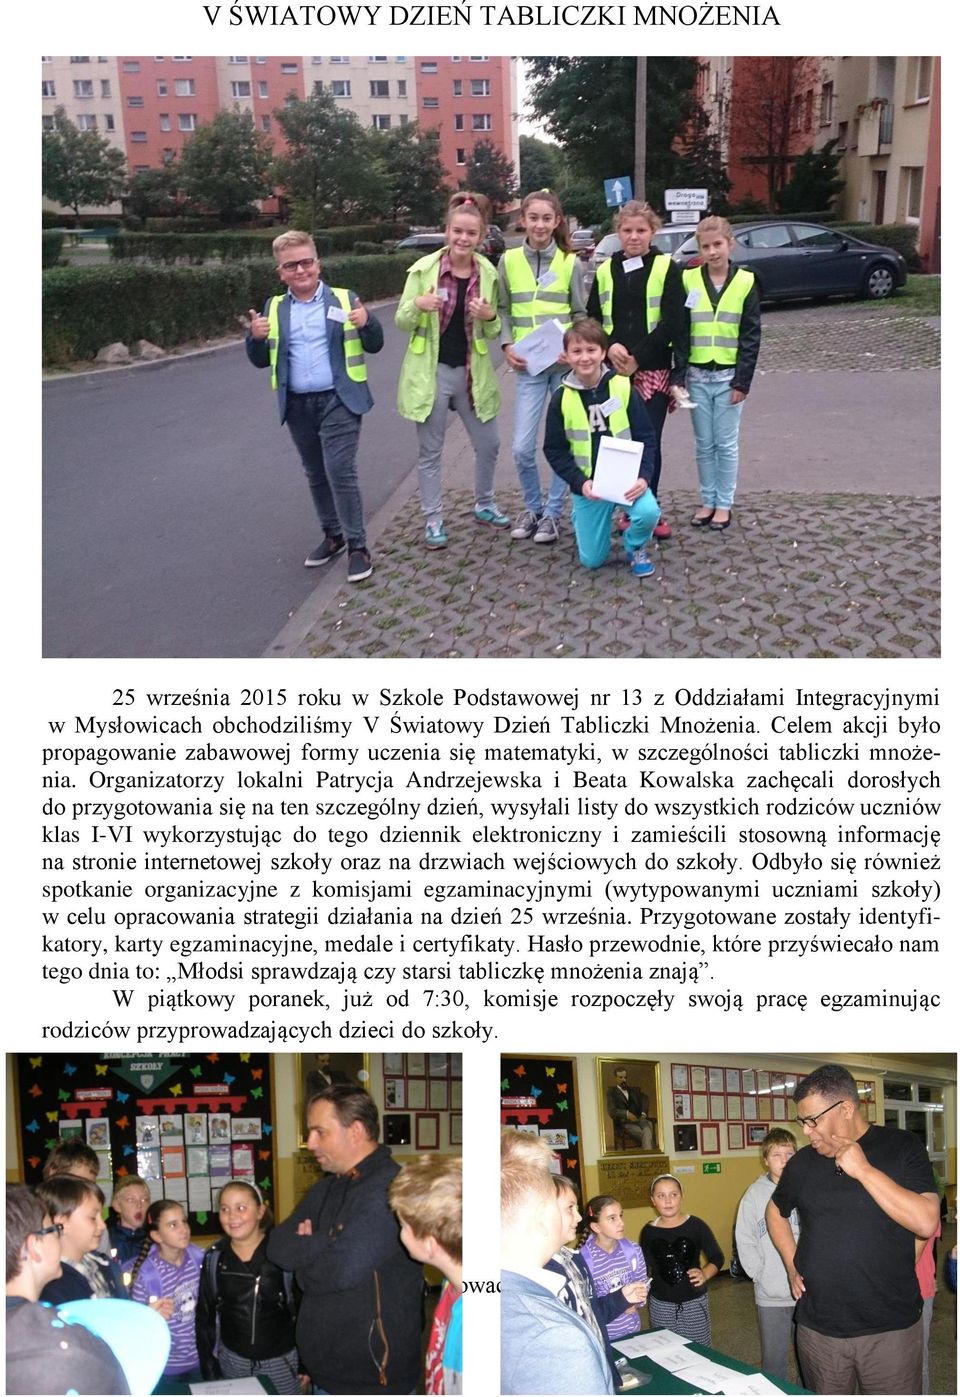 Organizatorzy lokalni Patrycja Andrzejewska i Beata Kowalska zachęcali dorosłych do przygotowania się na ten szczególny dzień, wysyłali listy do wszystkich rodziców uczniów klas I-VI wykorzystując do